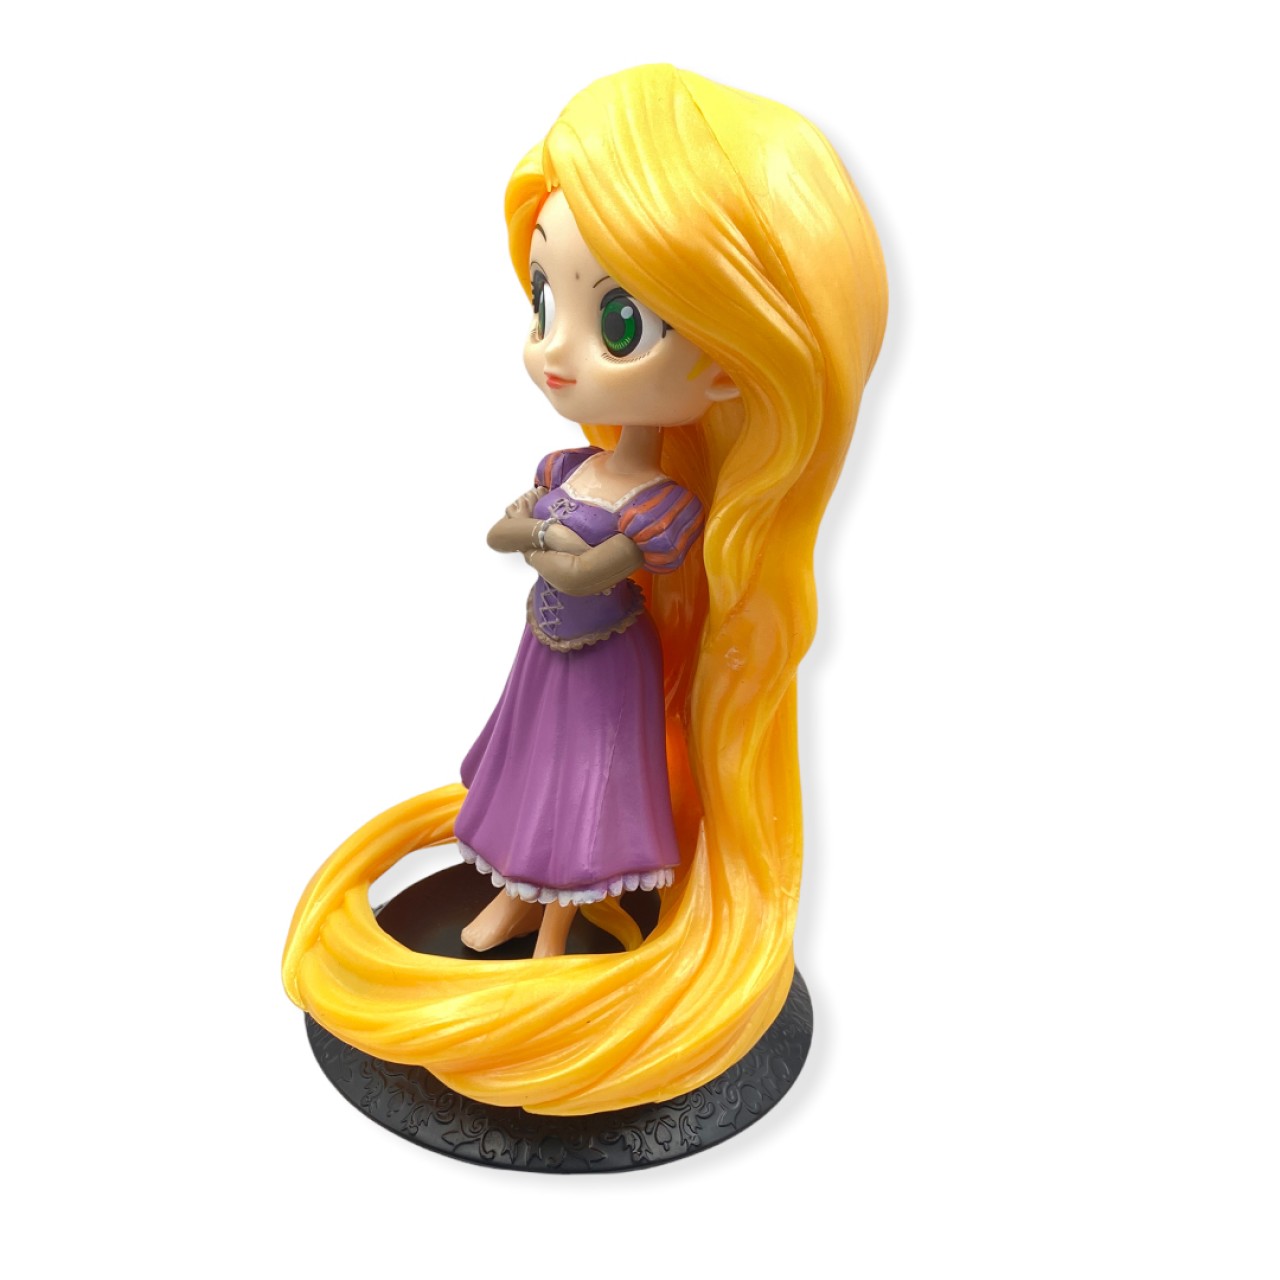 Princess Rapunzel Decorative Action Figure